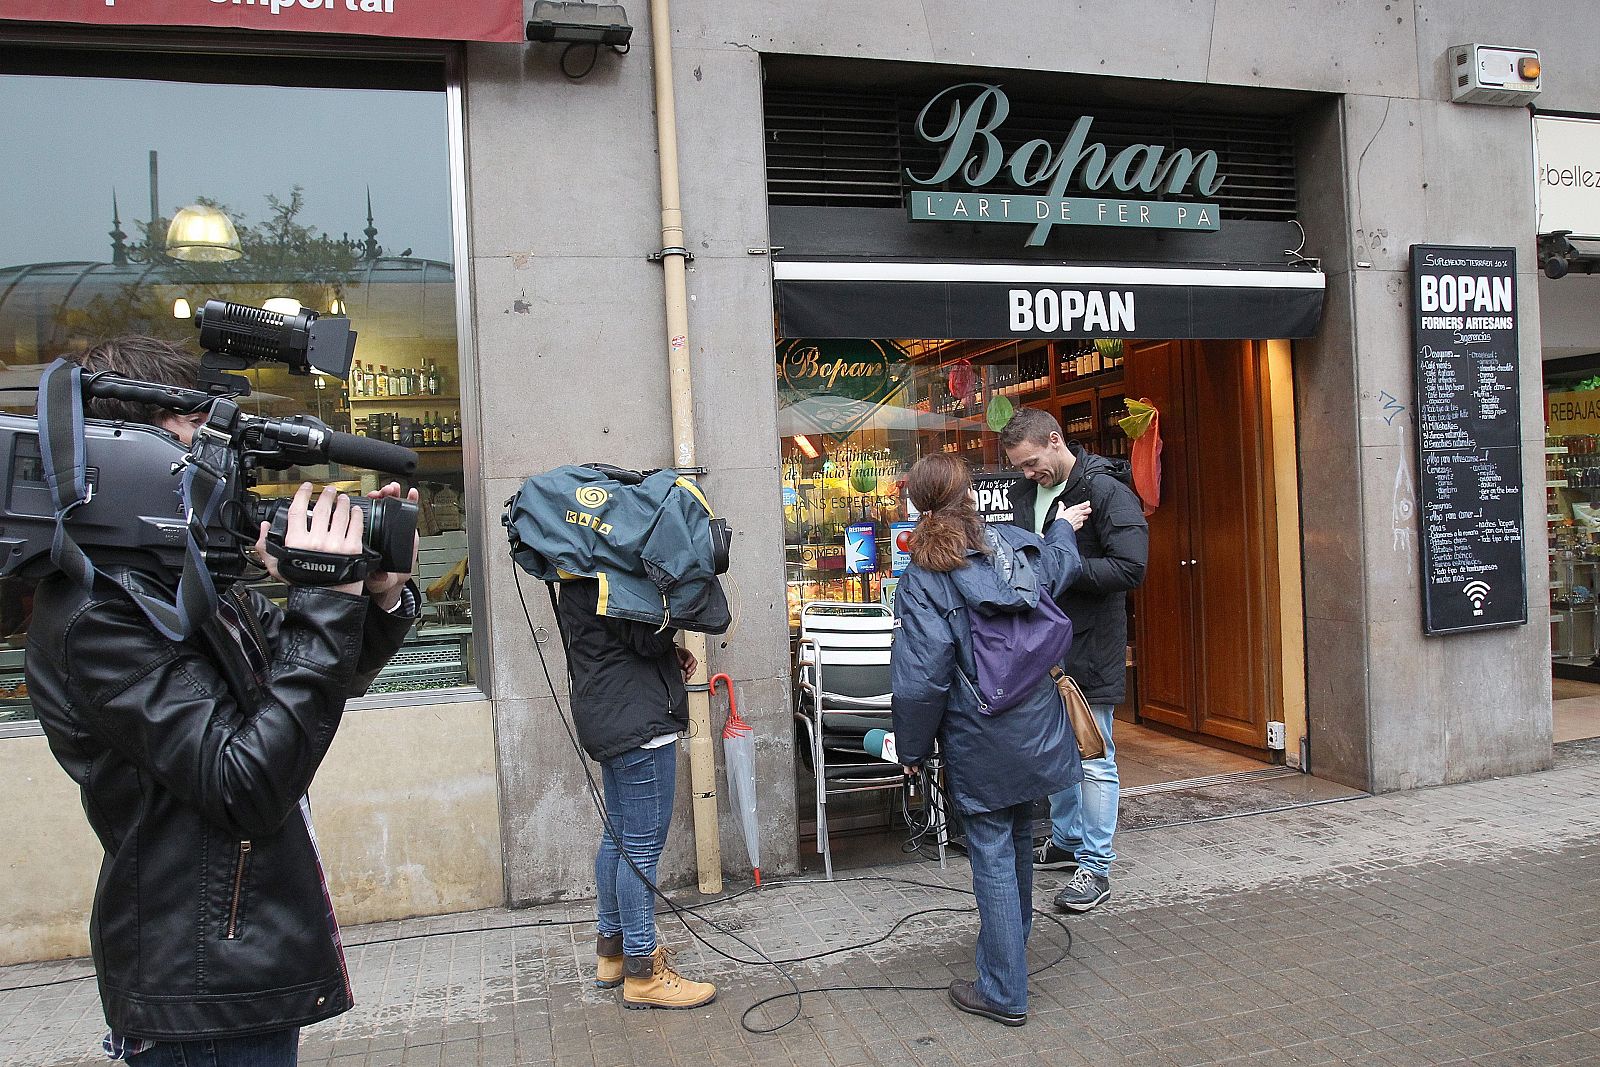 Establecimiento comercial de Barcelona donde falleció el actor Alfonso Bayard